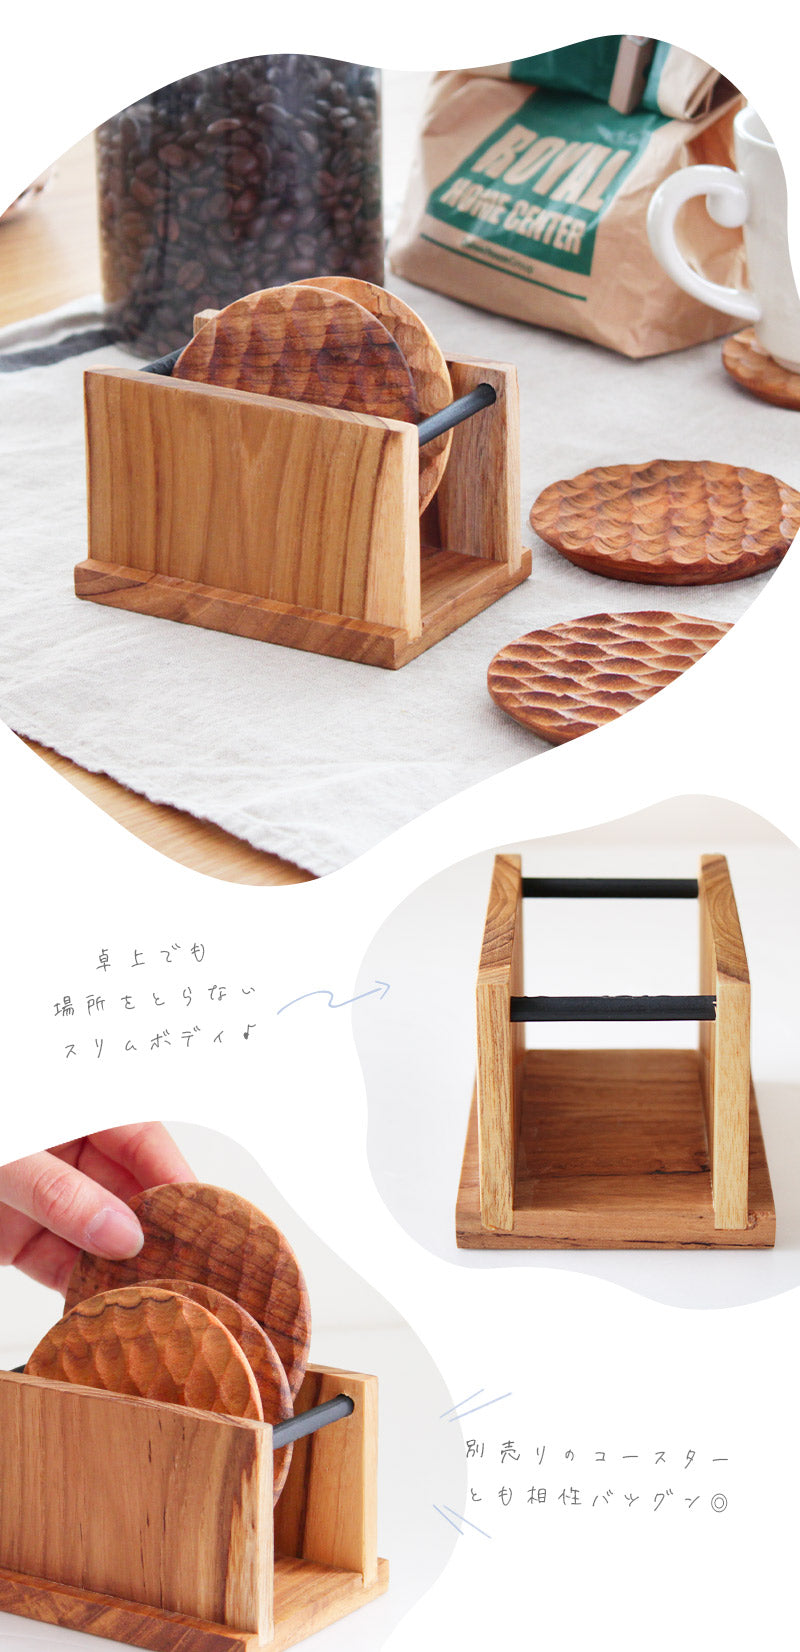 Wood coaster stand ウッドコースタースタンド コースターをスマートに収納できてテーブルがすっきり♪④